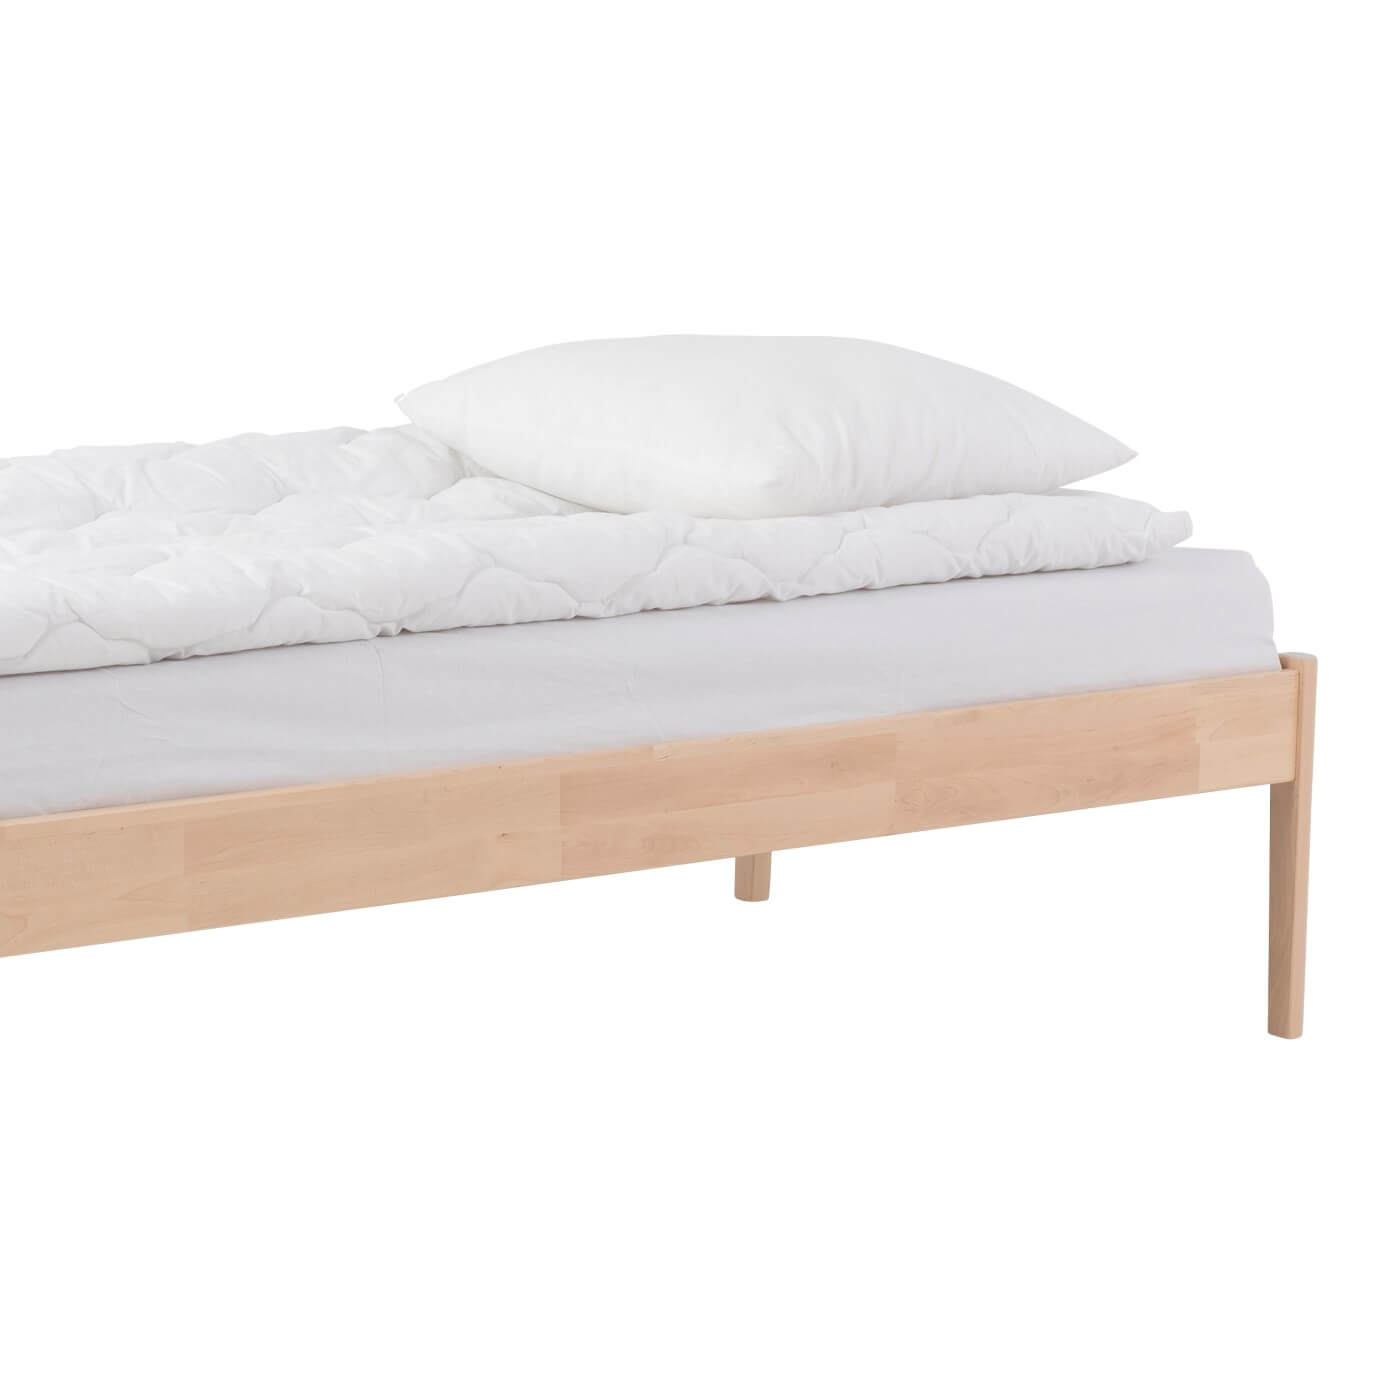 Łóżko drewniane bez zagłówka AVANTI. Fragment łóżka bez zagłówka 90x200 do sypialni z drewnianymi wysoki nóżkami. Na łóżku leży materac i biała pościel. Nowoczesny skandynawski design